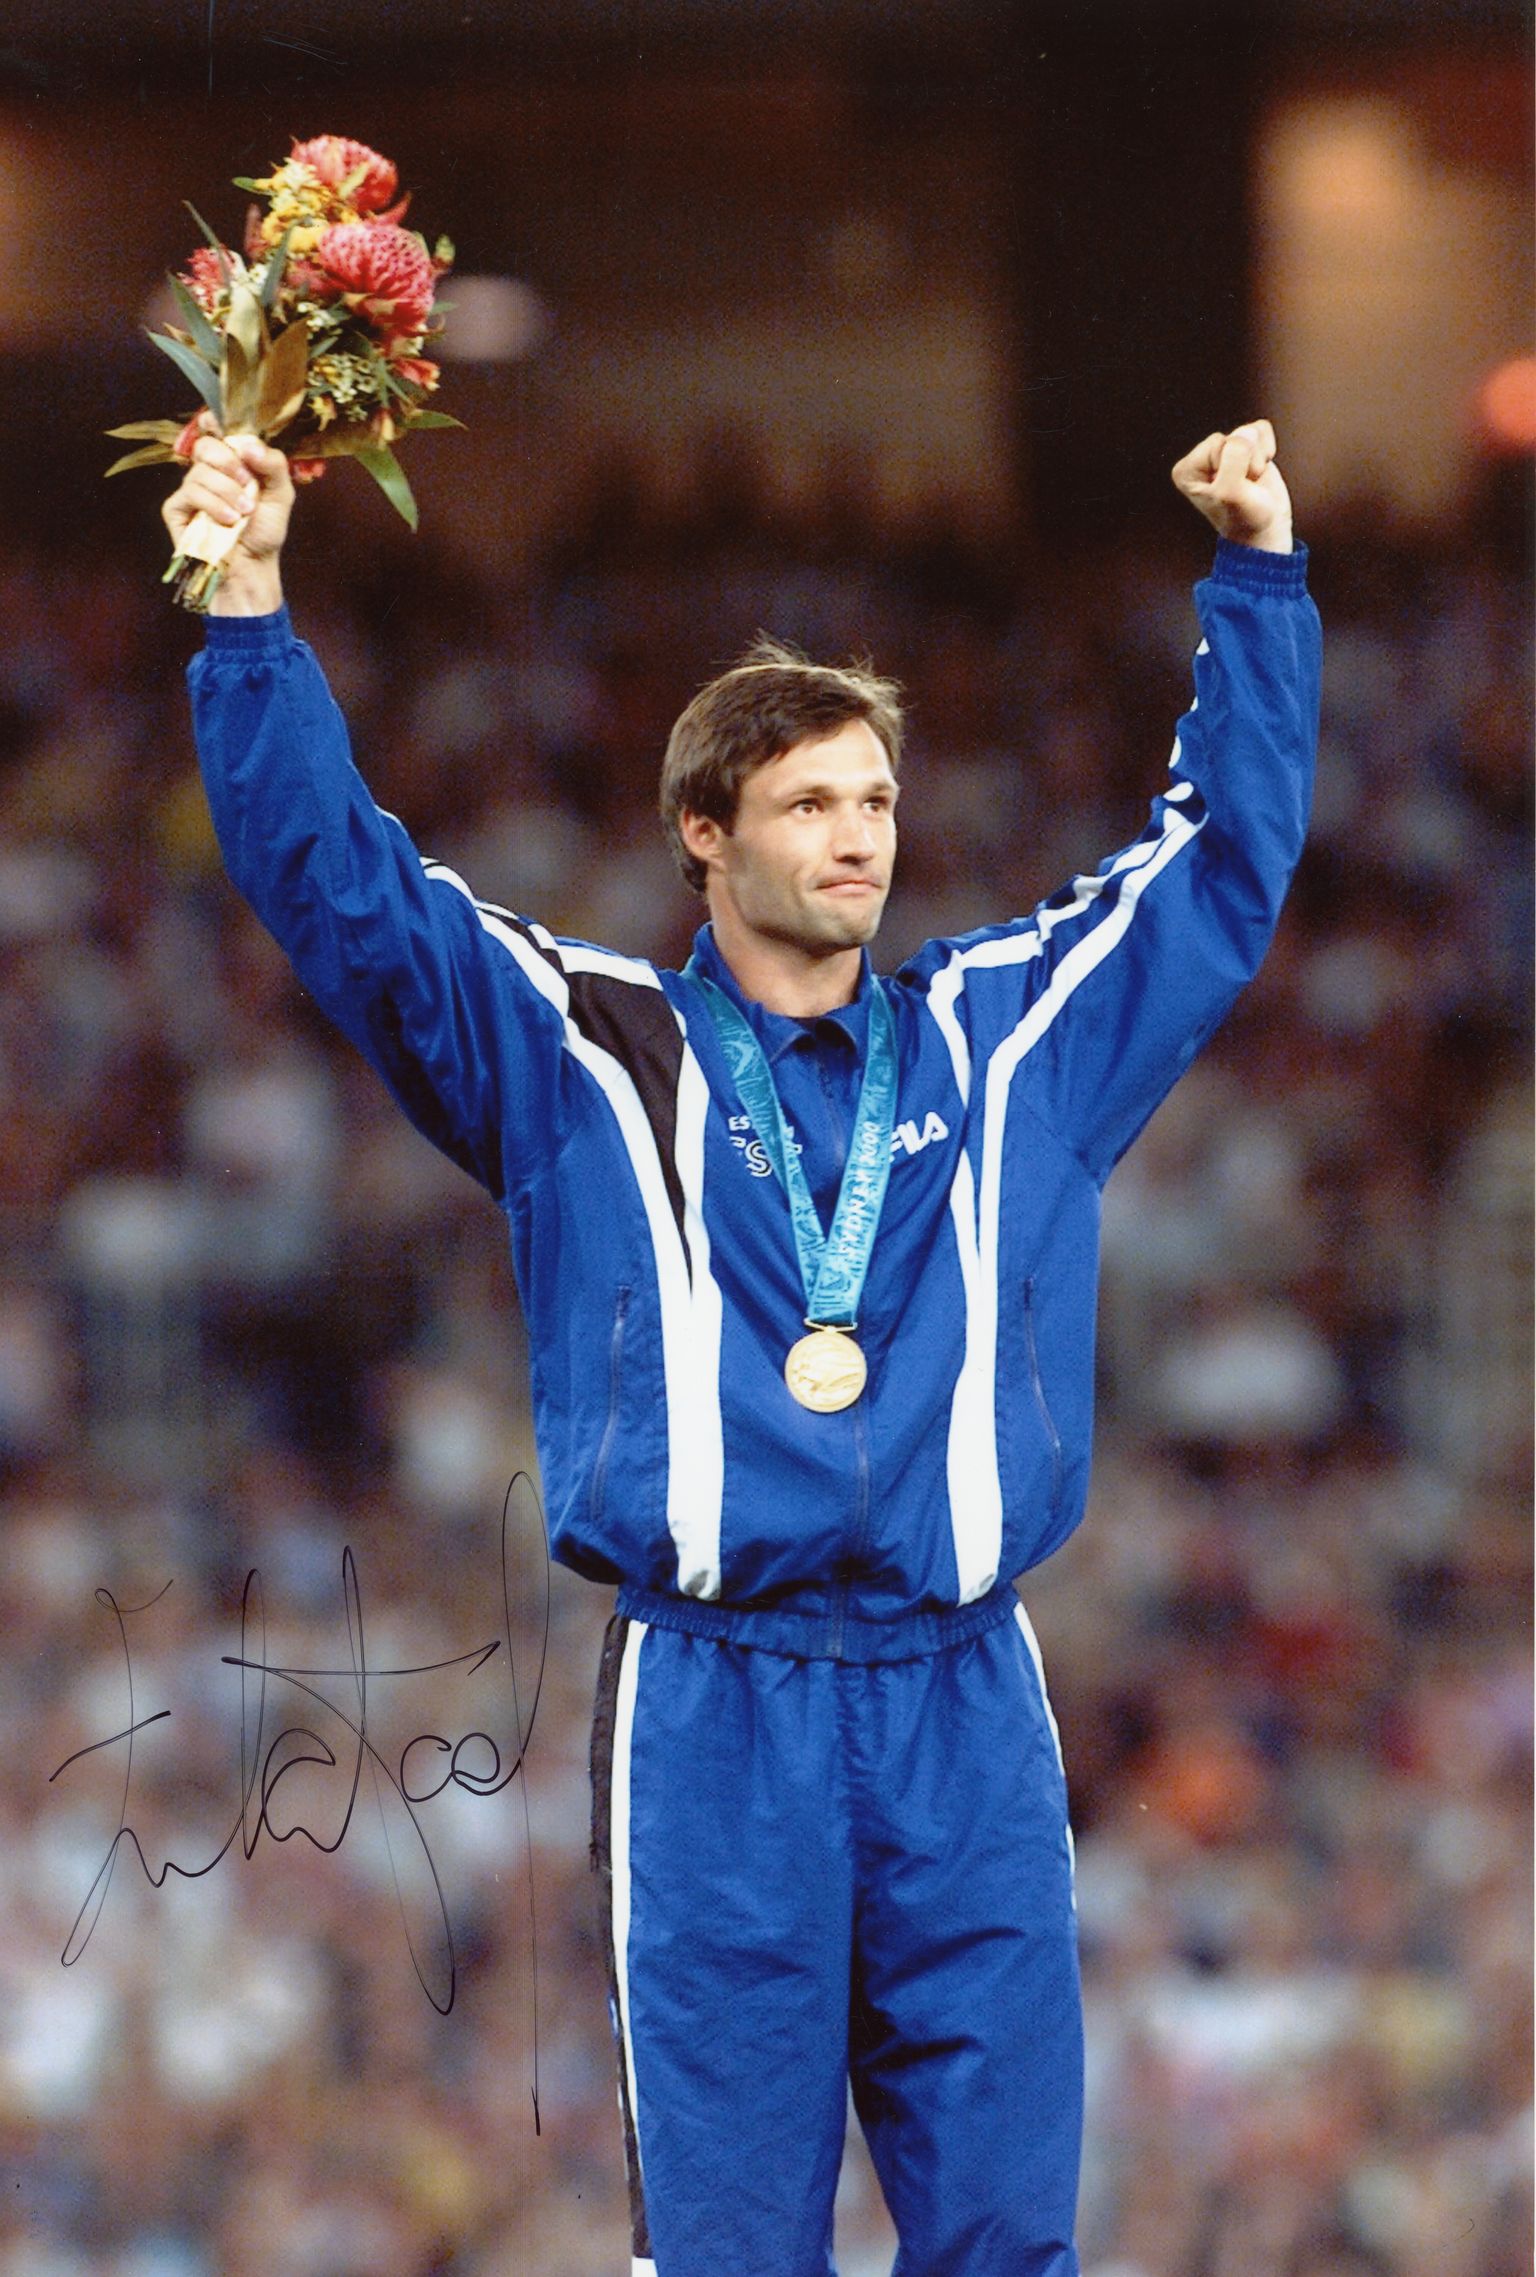 Olümpiavõitja Erki Nool Sydneys autasustamispjedestaalil (2000).